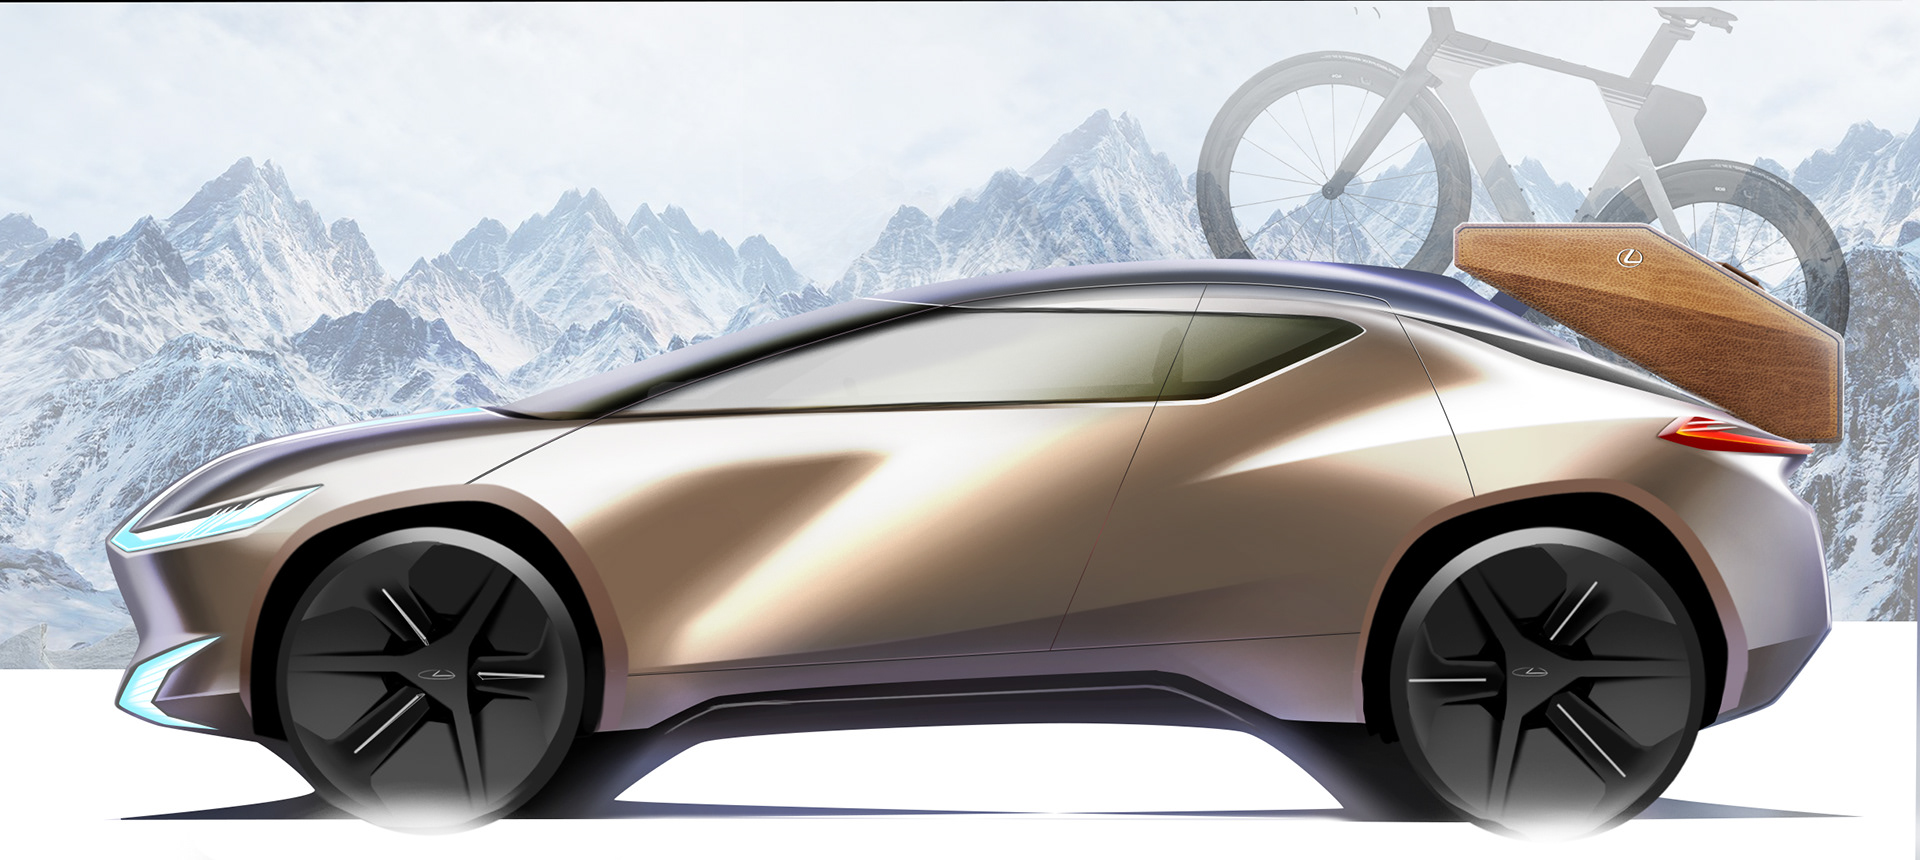 Edmund He Automotive Design Portfolio 2025 Lexus E Crossover 2017